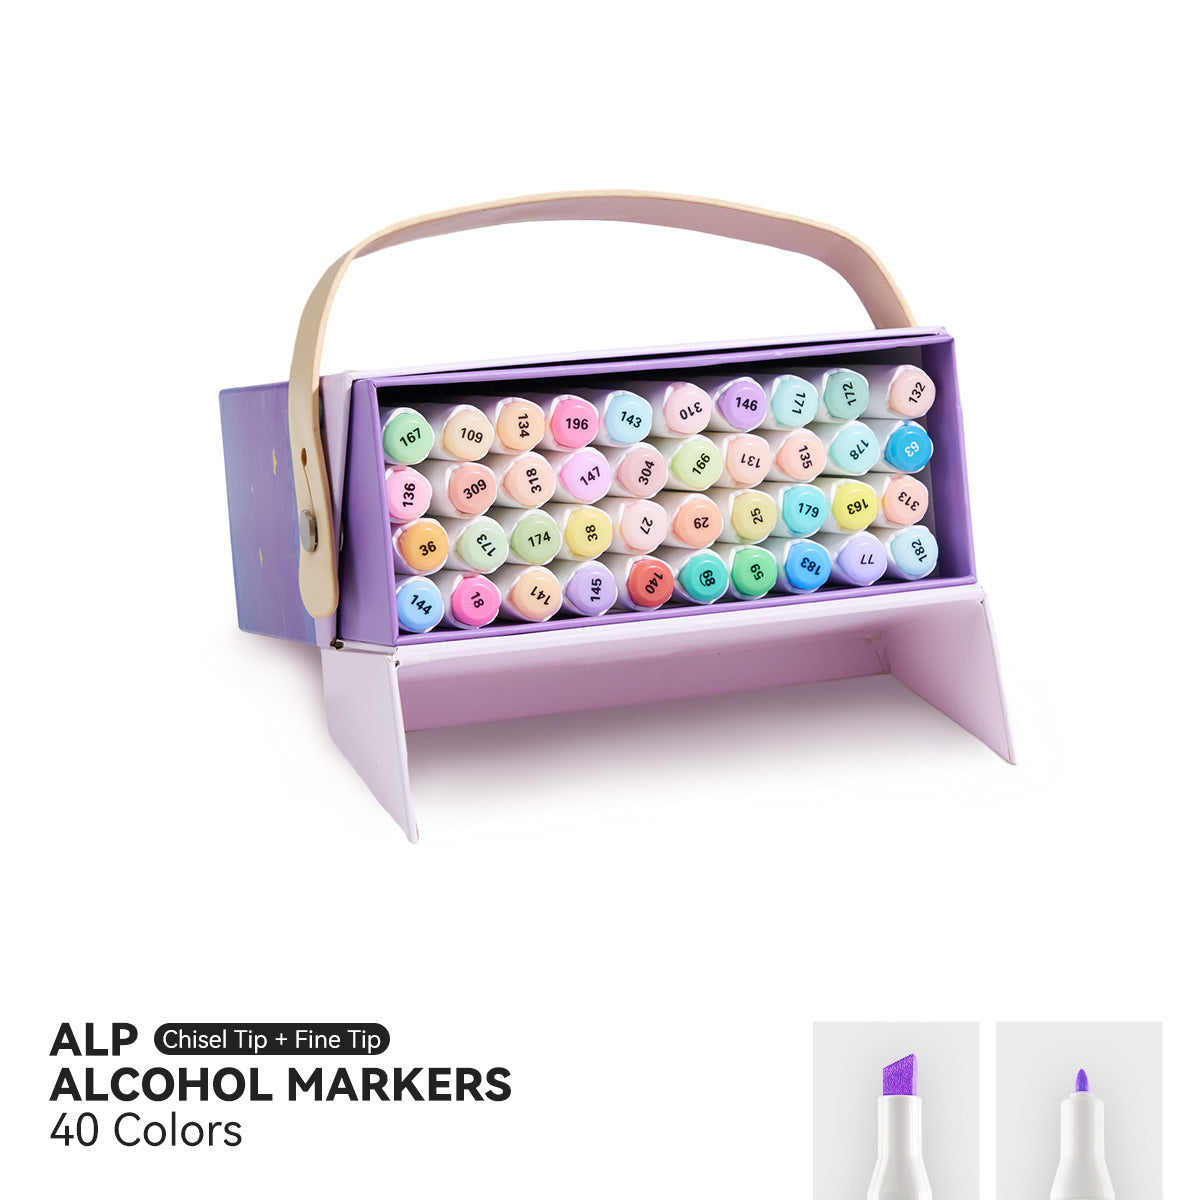 Arrtx ALP Pastel Color 40 Colors Alcohol Markers